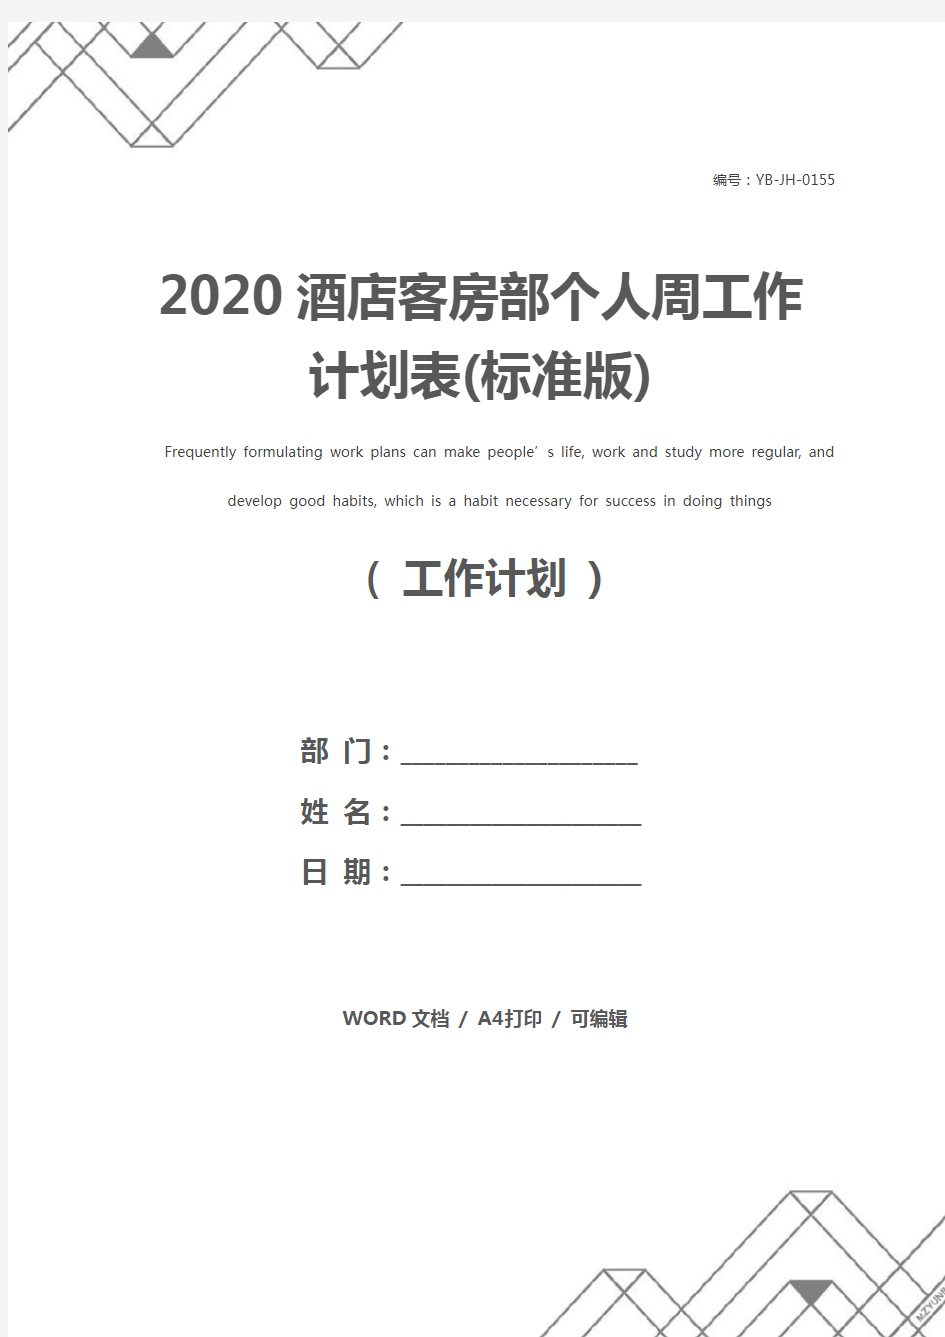 2020酒店客房部个人周工作计划表(标准版)